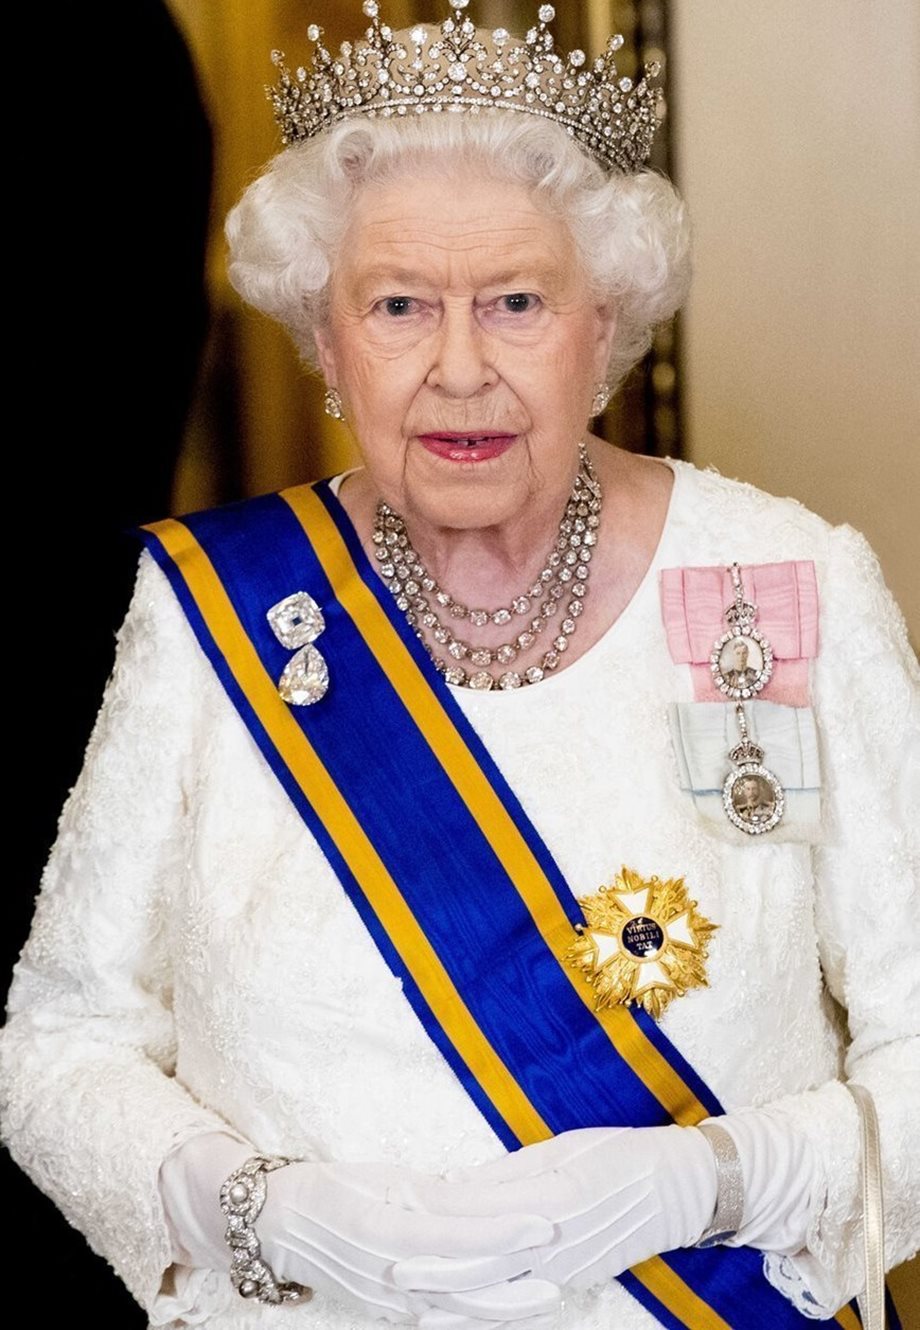 Η Βασίλισσα Ελισάβετ ακυρώνει ξανά δημόσια εμφάνισή της: Ανησυχία για την υγεία της - Τι λέει το Παλάτι